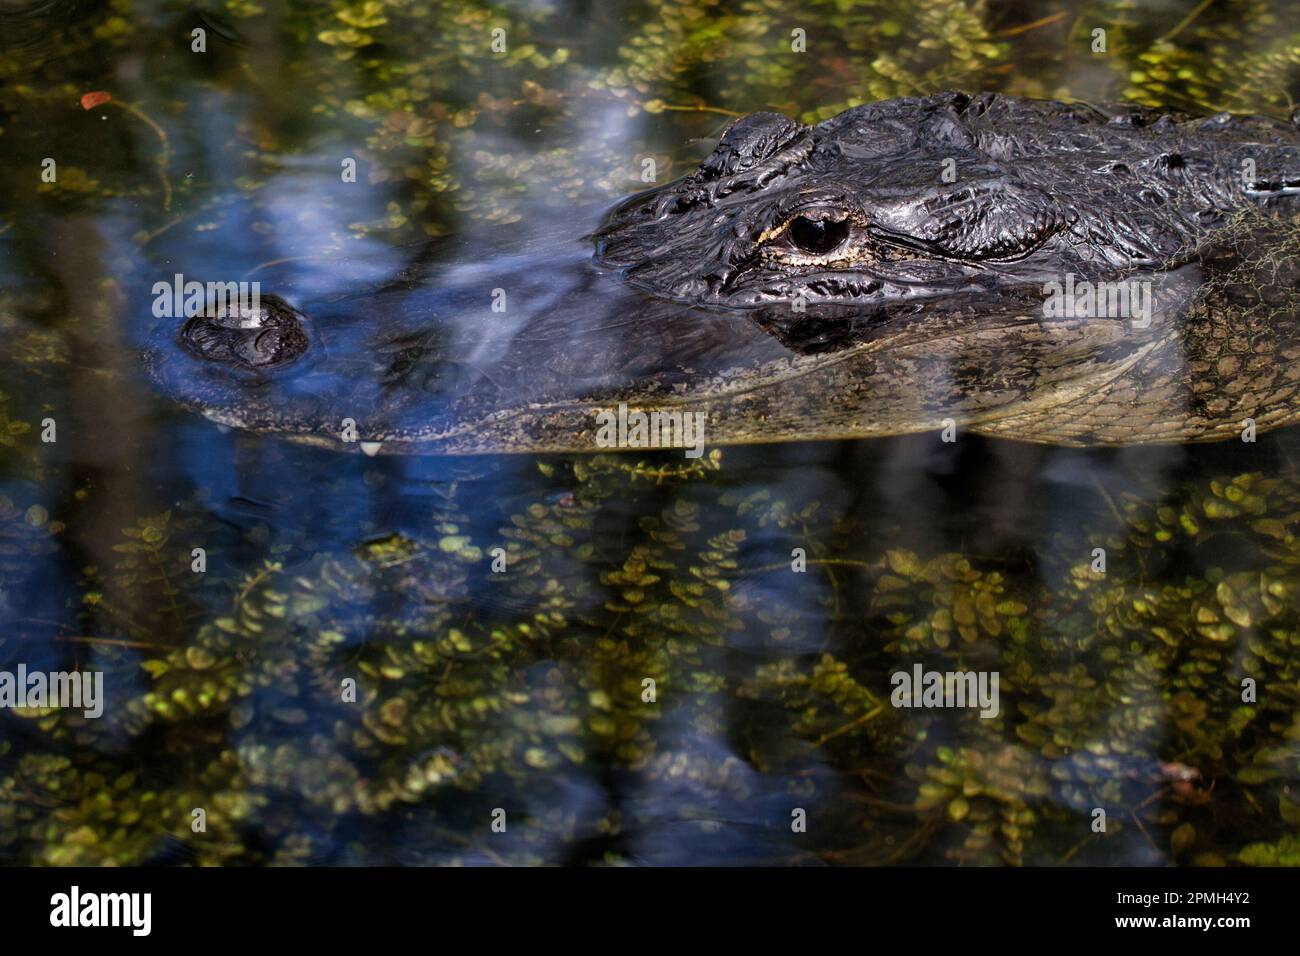 Nahaufnahme des Krokodilgesichts mit seiner Nase in reflektierten Wolken, die über grünen Wasserpflanzen gleiten Stockfoto